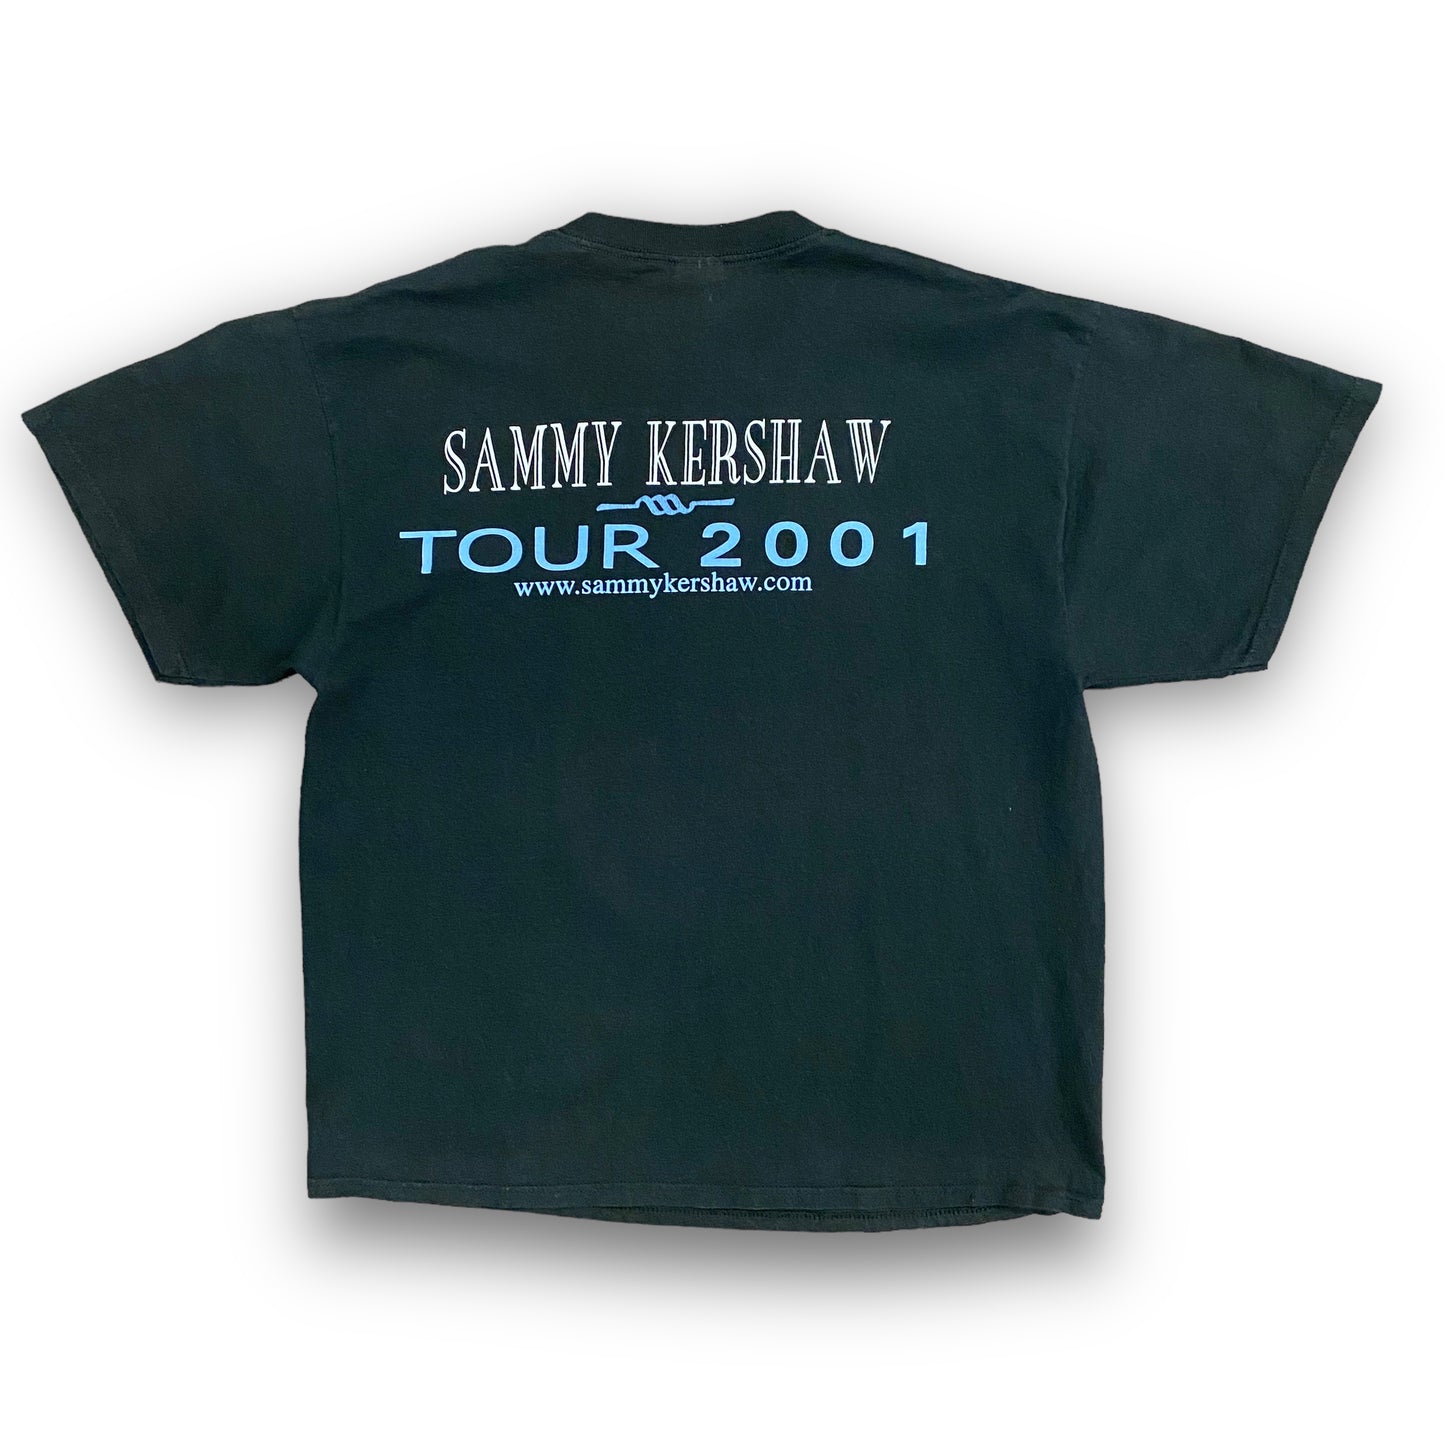 2001 Sammy Kershaw Black Tour Tee - Size XL